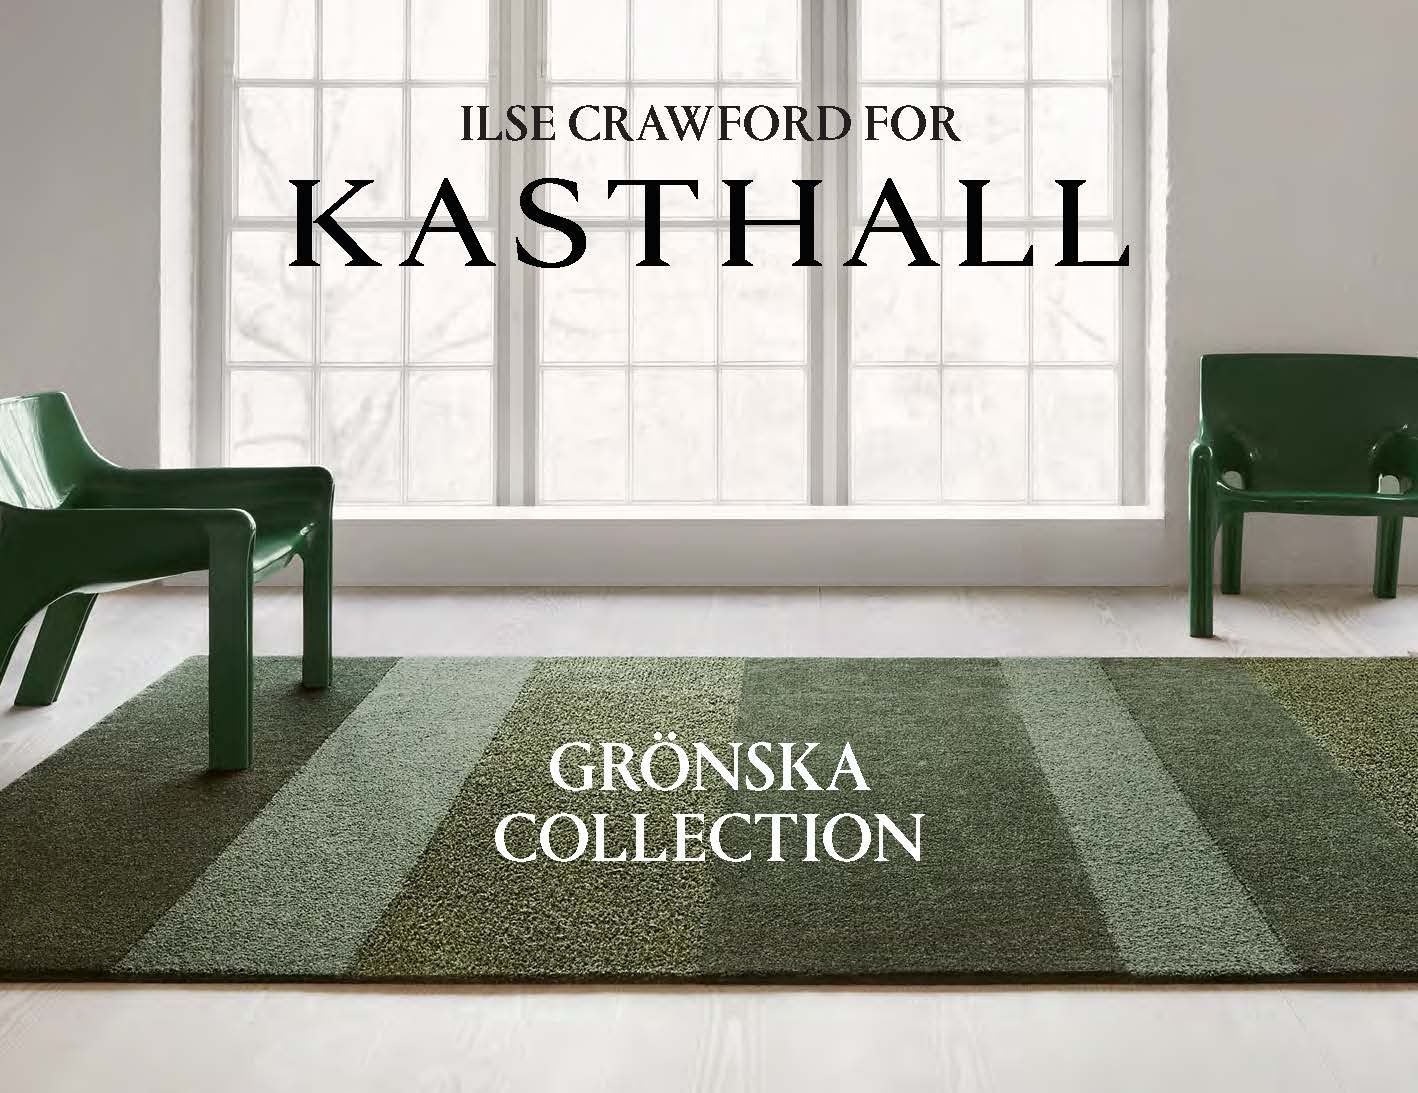 Kasthall Catalog_Ilse Crawford x Kasthall Gronska Collection Cover